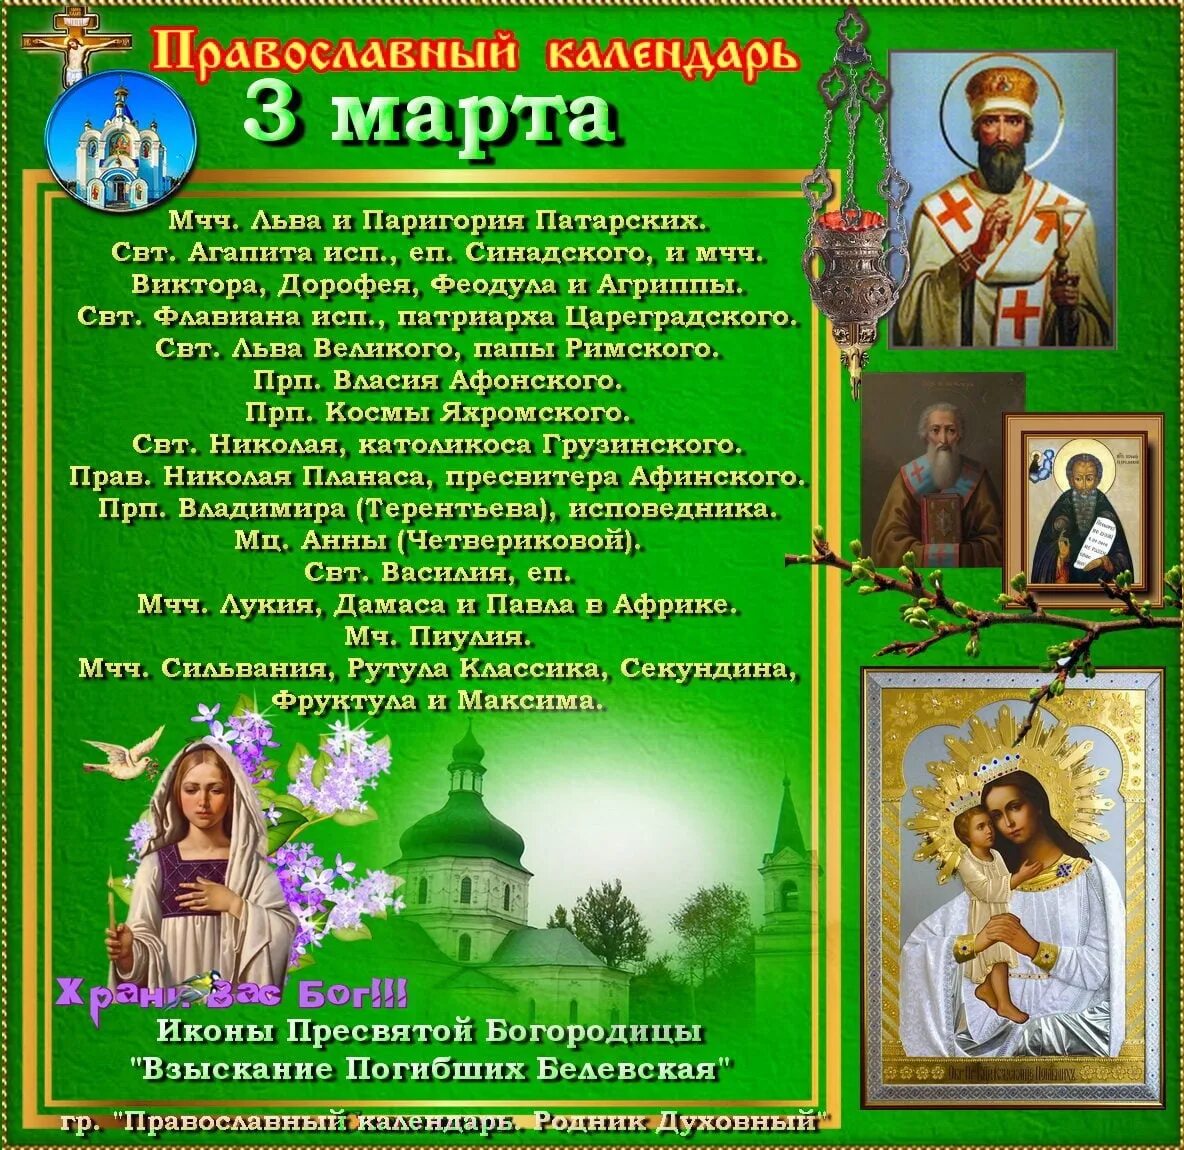 3 апреля православный календарь. Православный календарь на март.